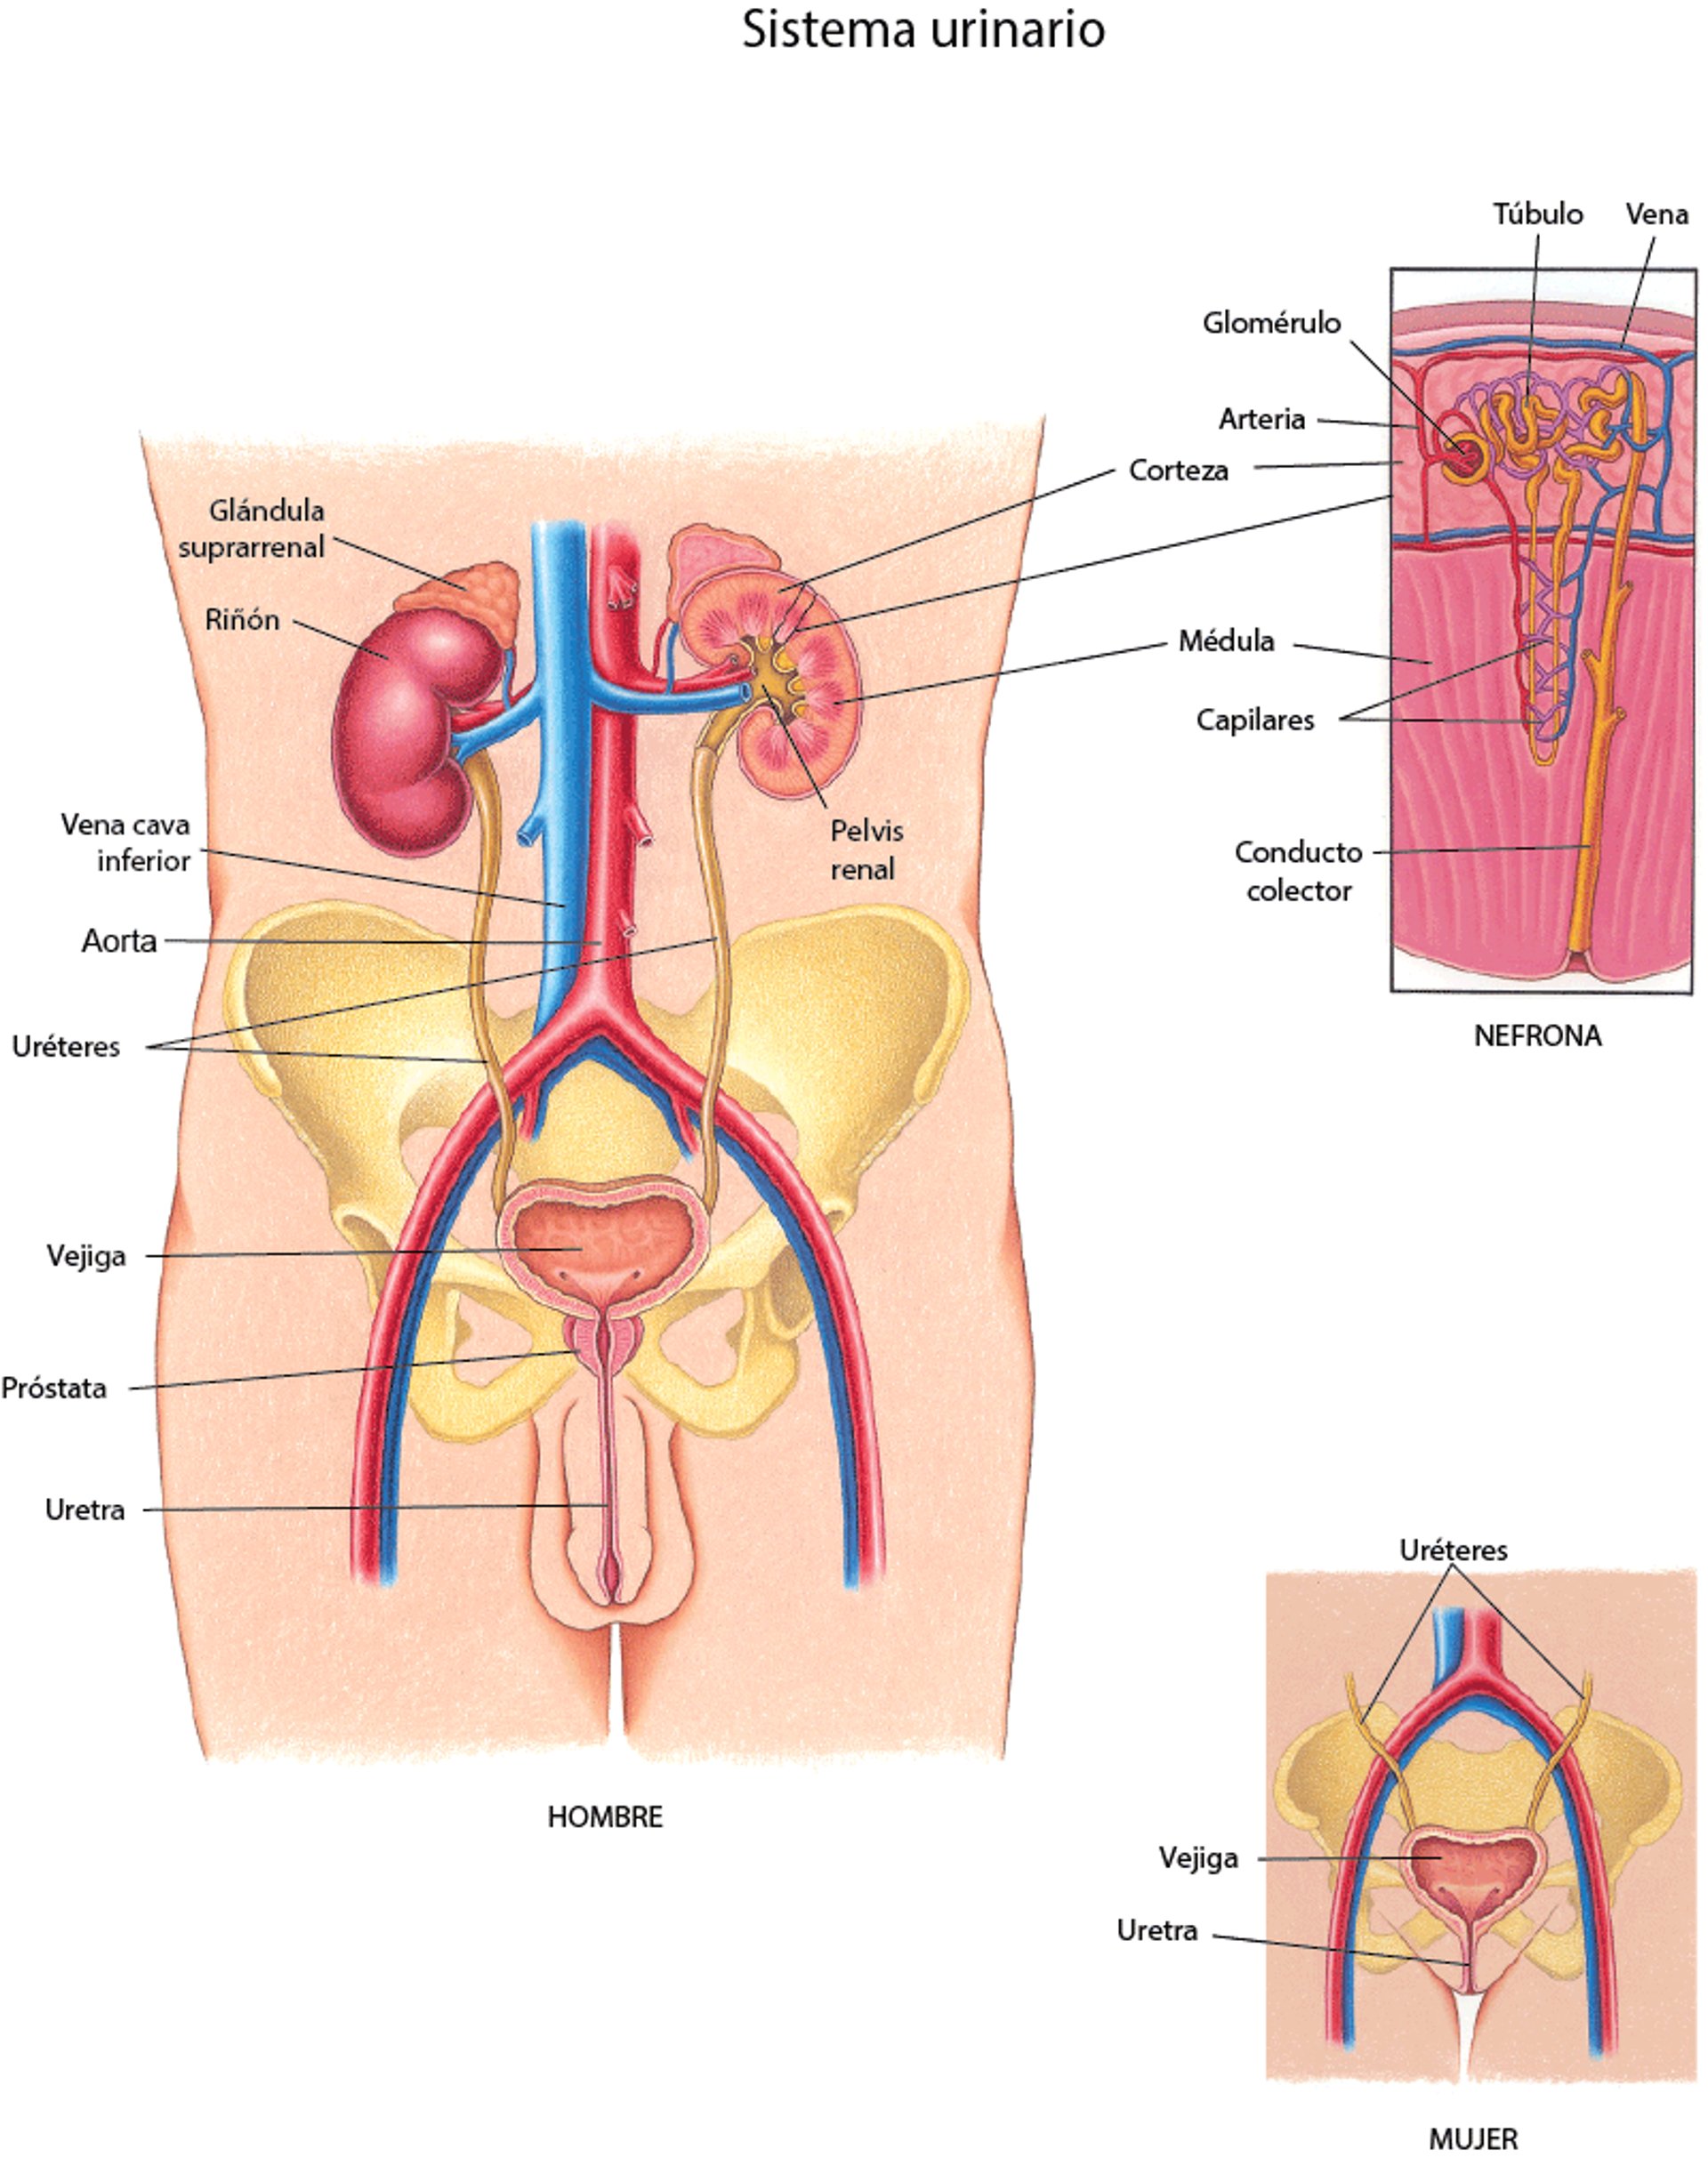 Una visión del aparato urinario